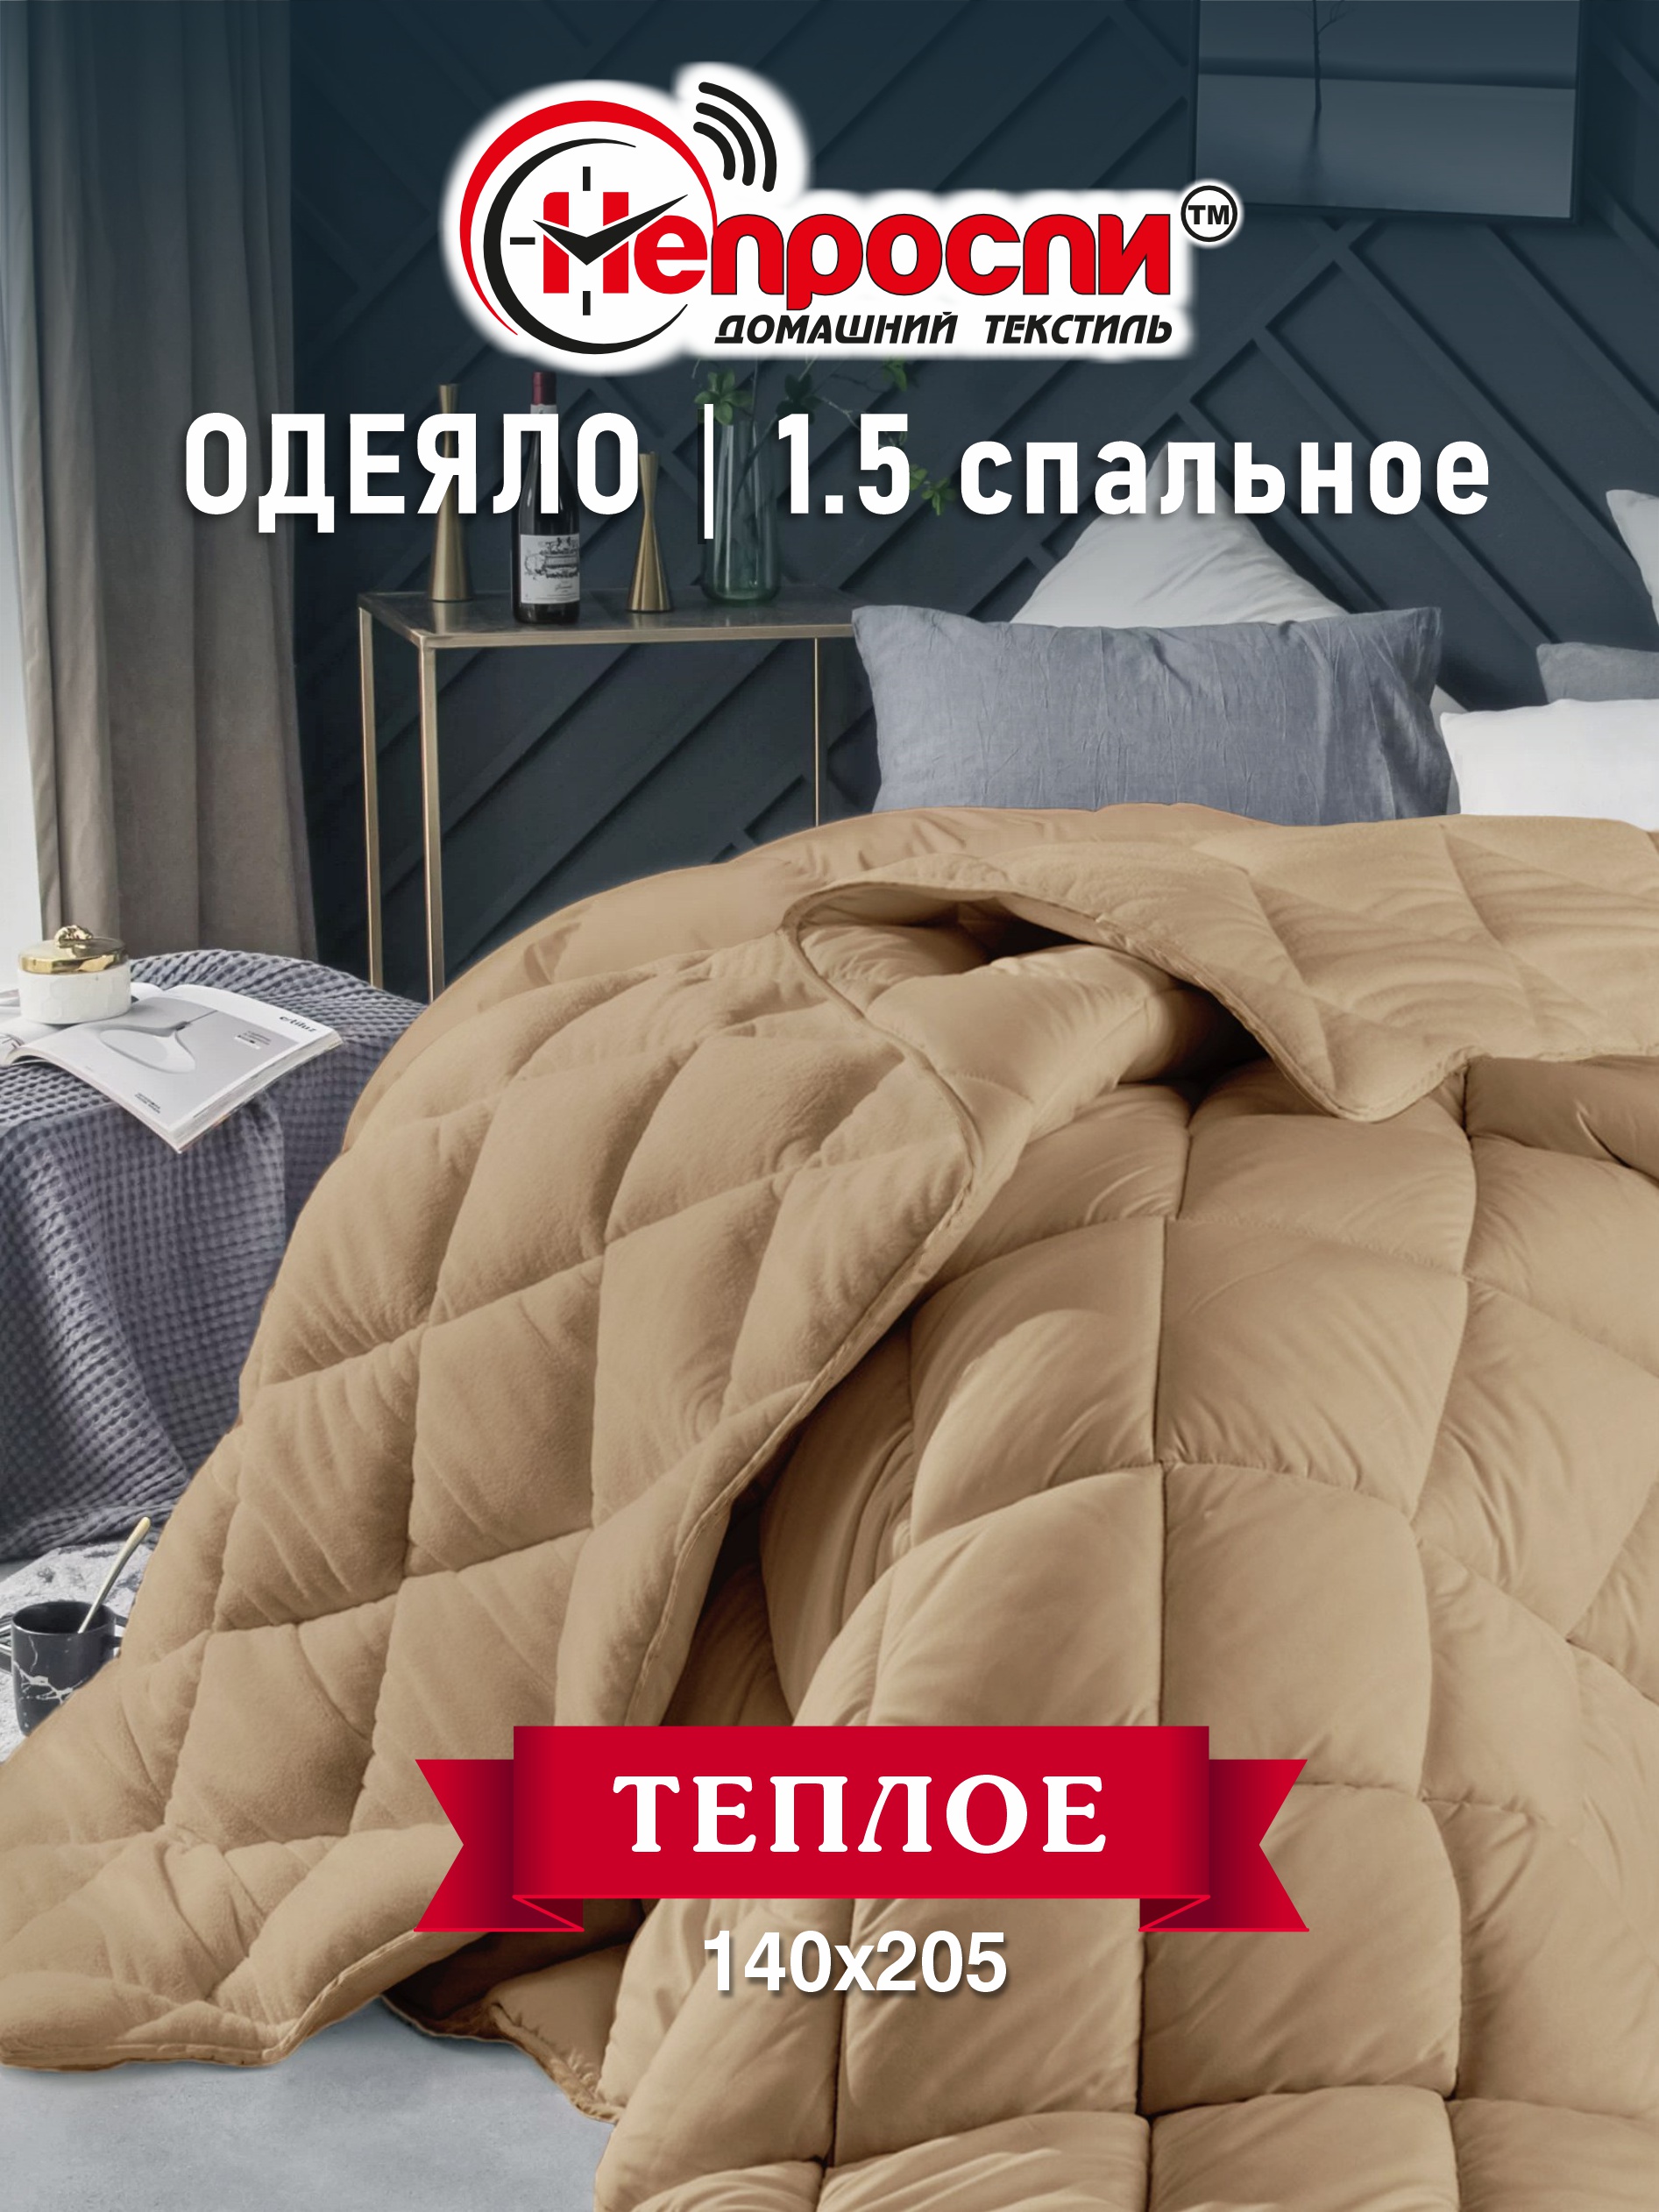 Одеяло Непроспи Верблюд 1,5 - спальное 140х205 см